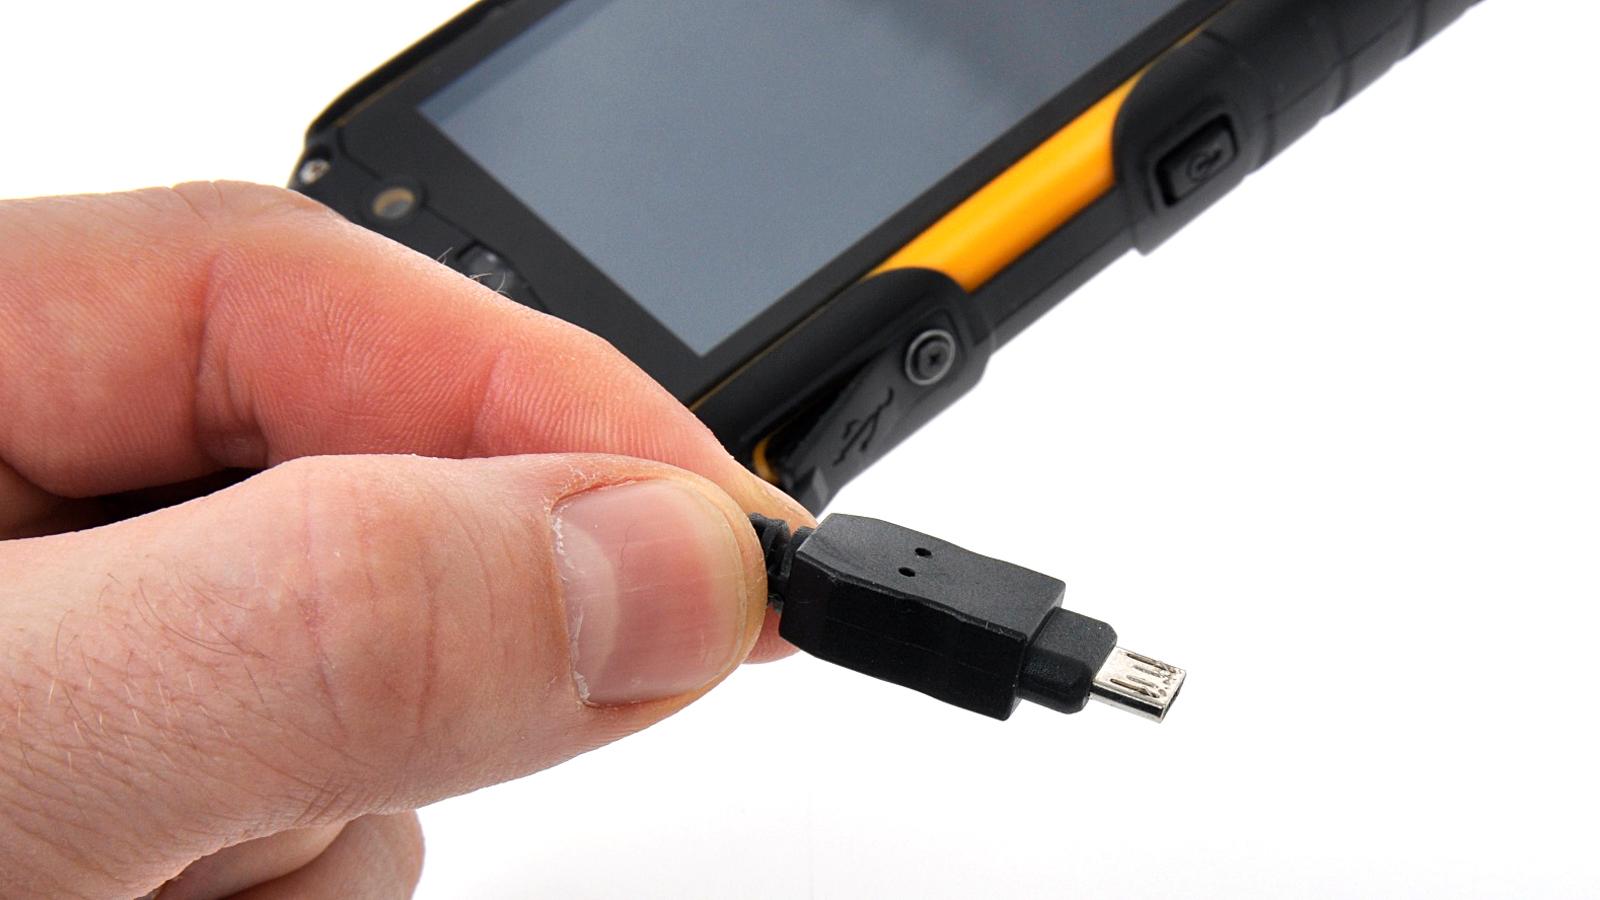 Micro-USB-kontakten sitter så langt inn i telefonen at du må bruke den medfølgende spesialvarianten av Micro-USB-kabel for å lade telefonen.Foto: Kurt Lekanger, Amobil.no